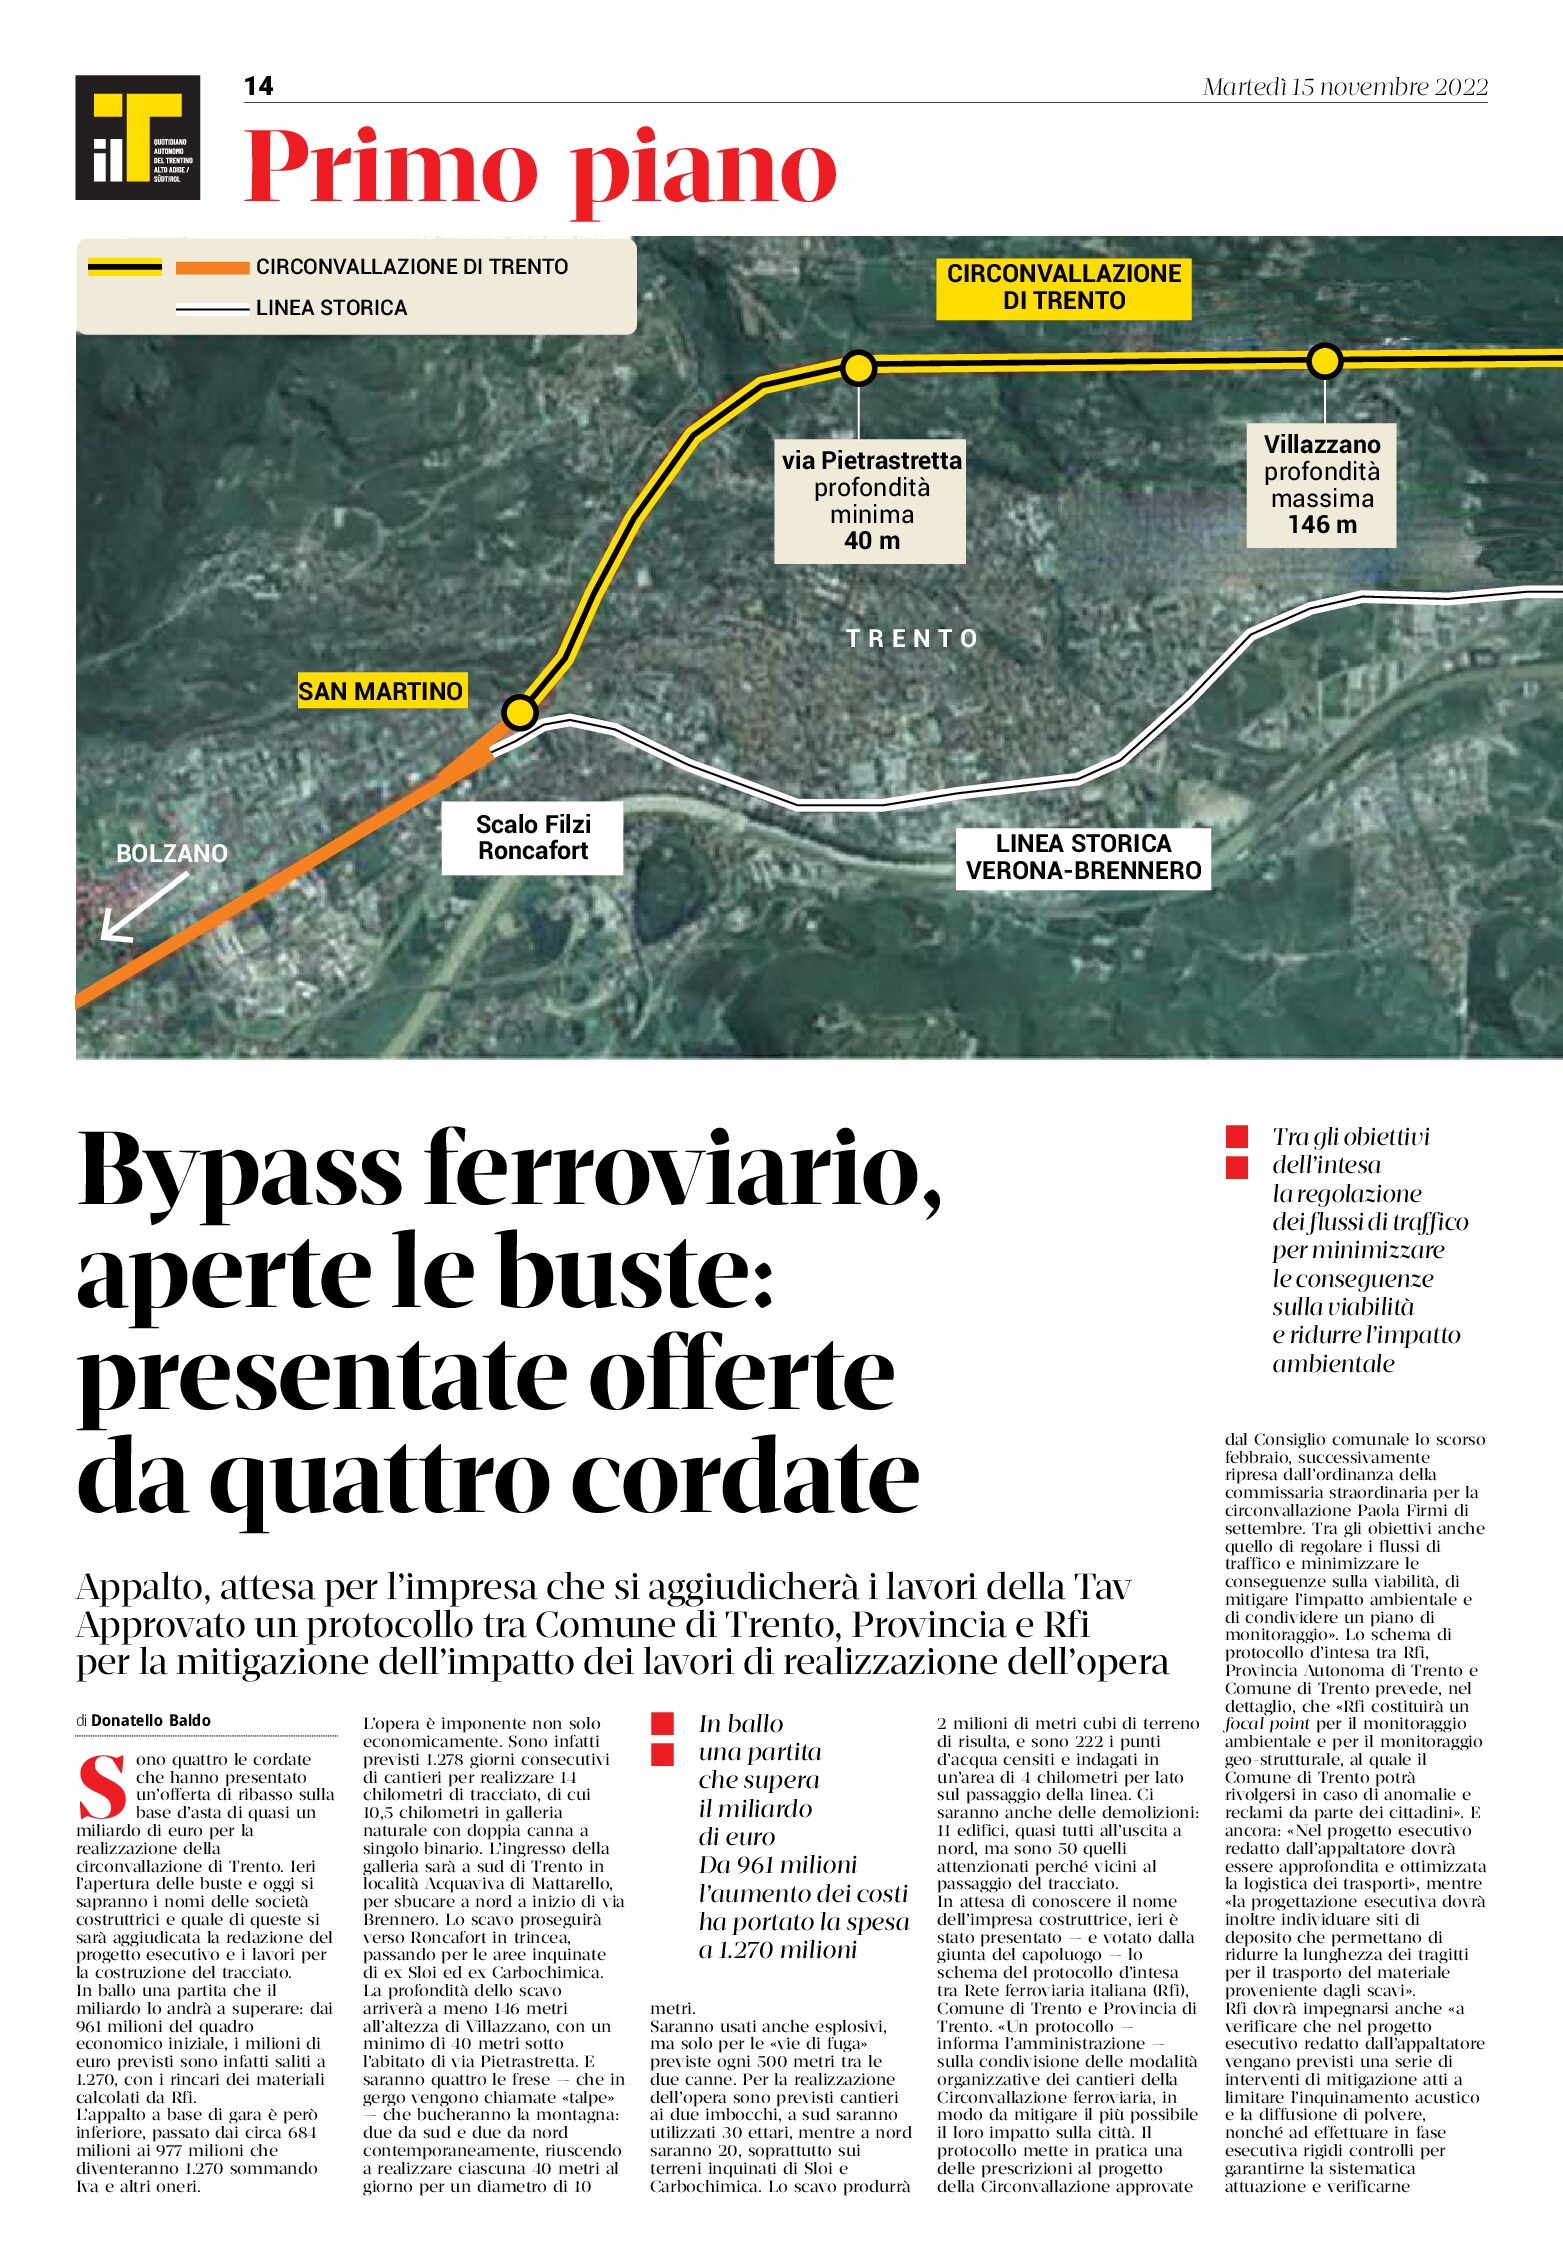 Trento, bypass ferroviario: aperte le buste, presentate offerte da quattro cordate